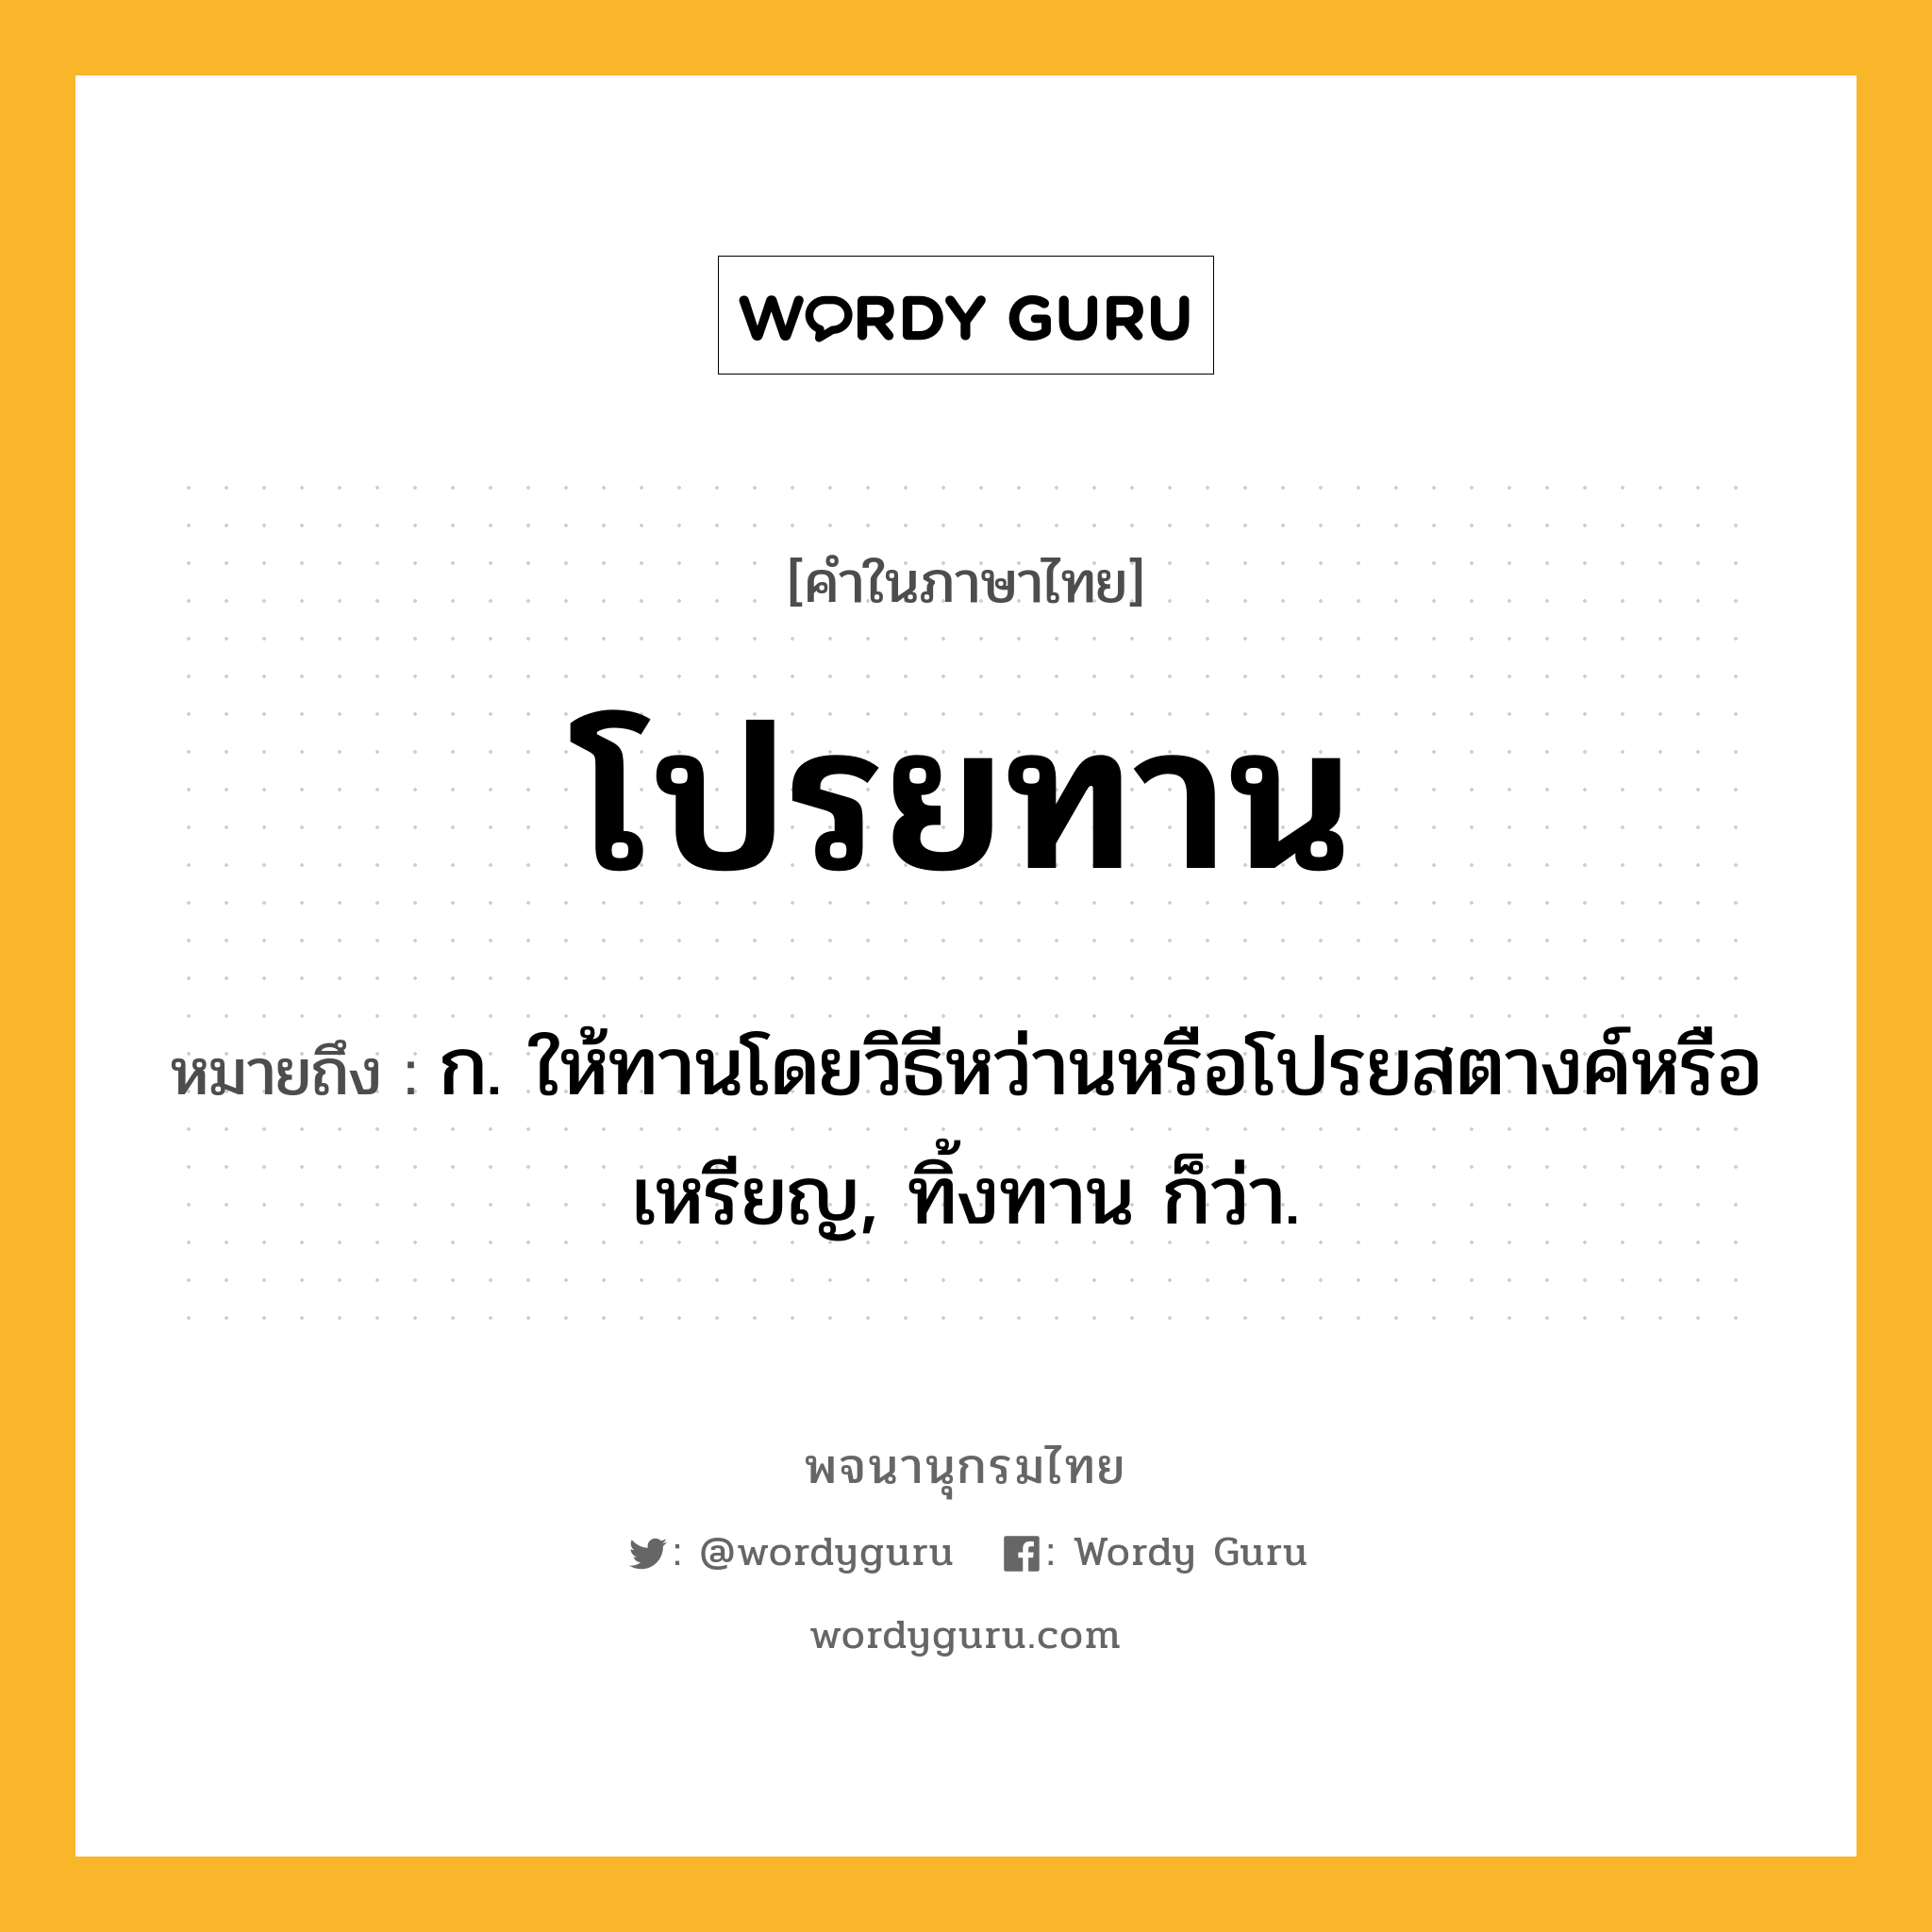 โปรยทาน ความหมาย หมายถึงอะไร?, คำในภาษาไทย โปรยทาน หมายถึง ก. ให้ทานโดยวิธีหว่านหรือโปรยสตางค์หรือเหรียญ, ทิ้งทาน ก็ว่า.